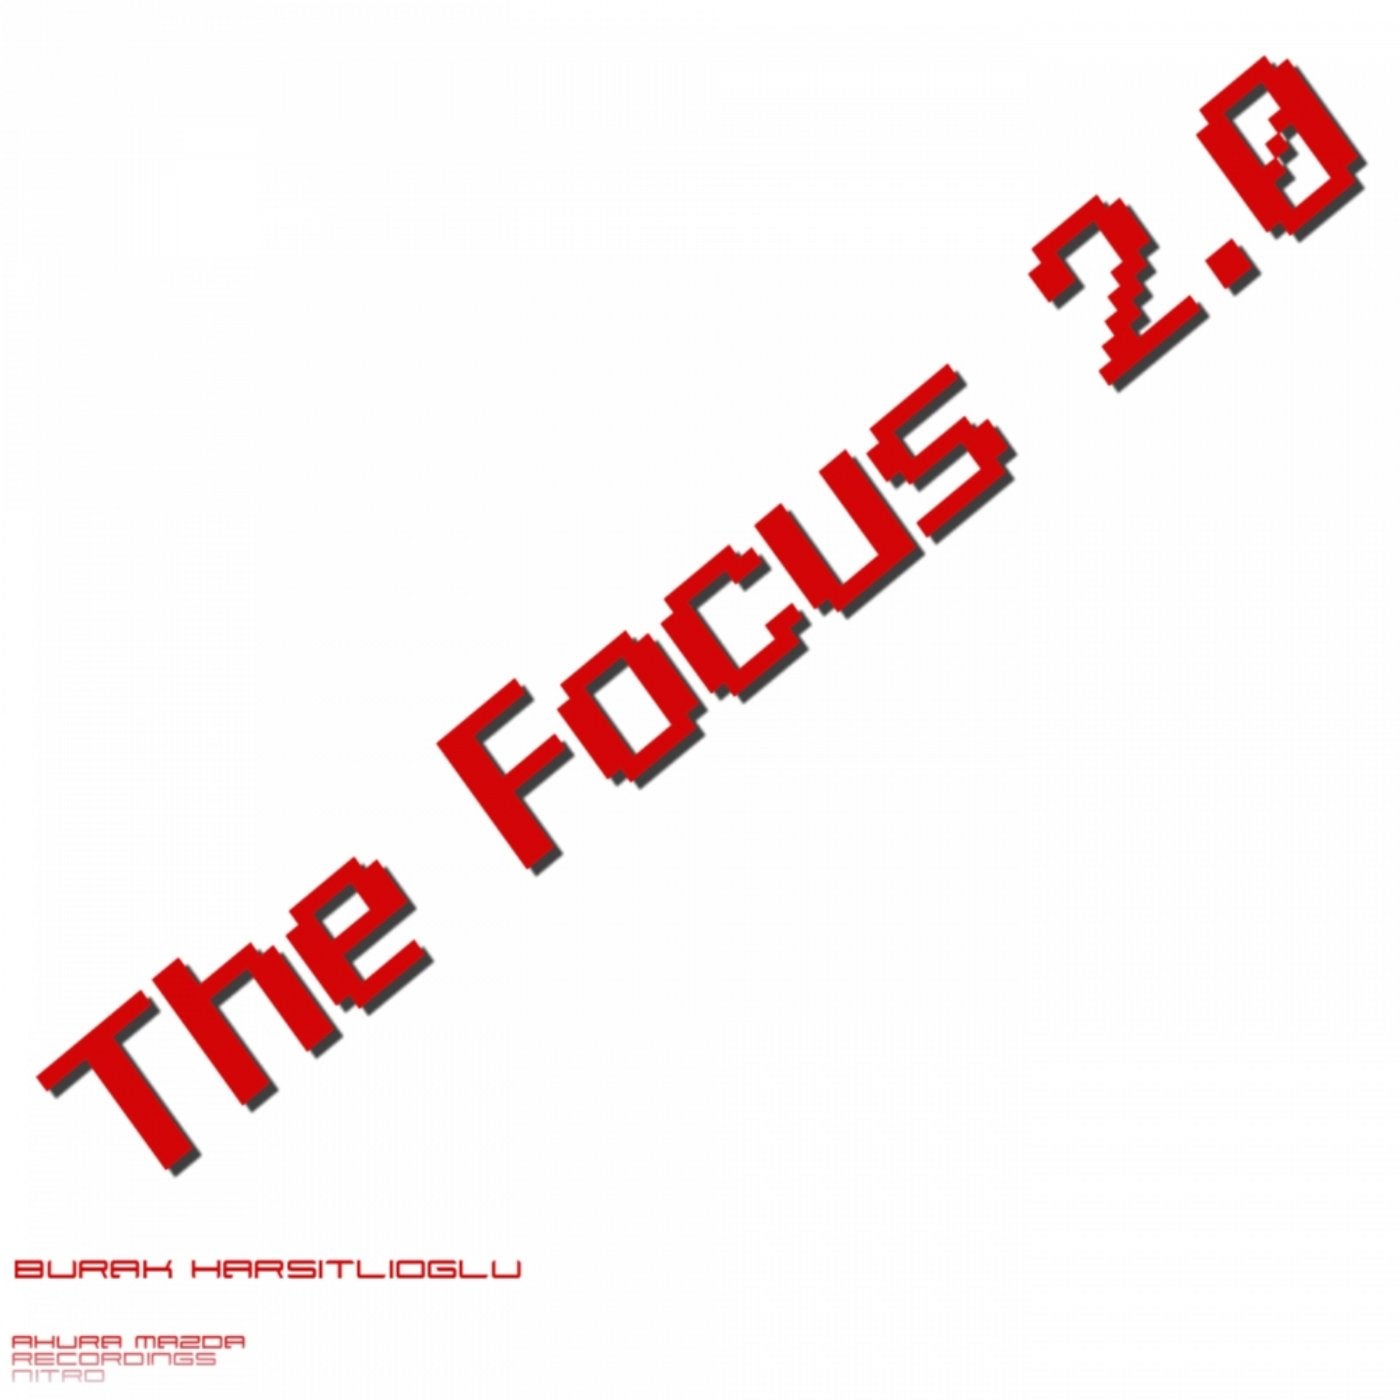 The Focus 2.0